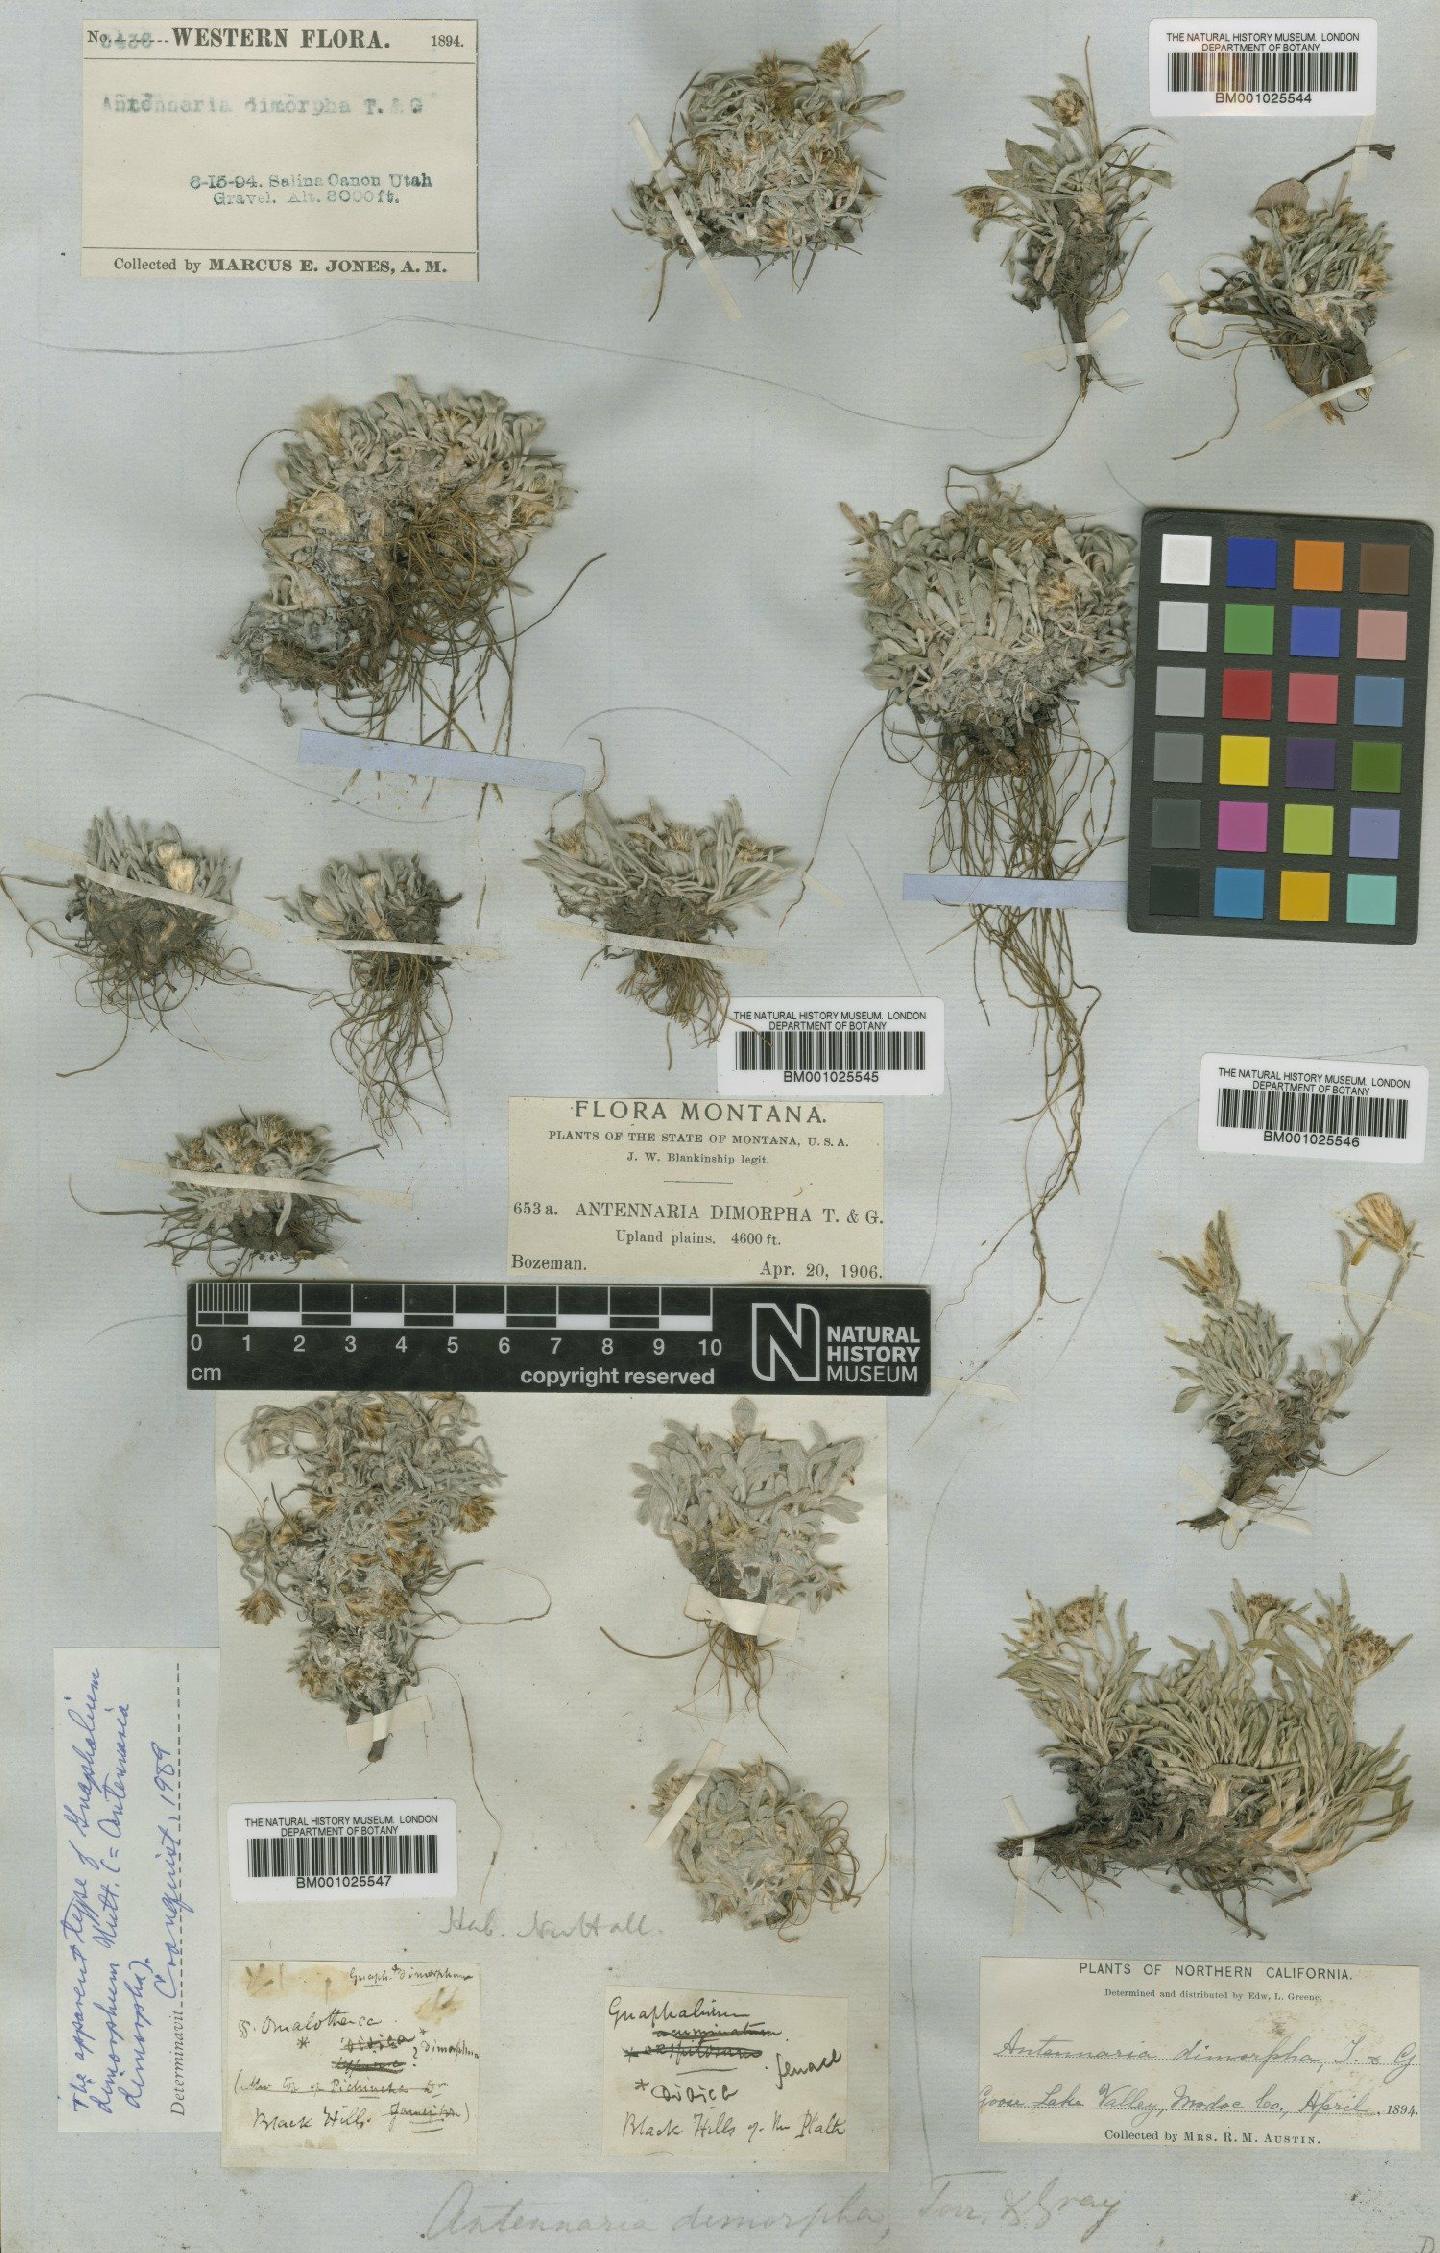 To NHMUK collection (Antennaria dimorpha Gray; Type; NHMUK:ecatalogue:1154453)